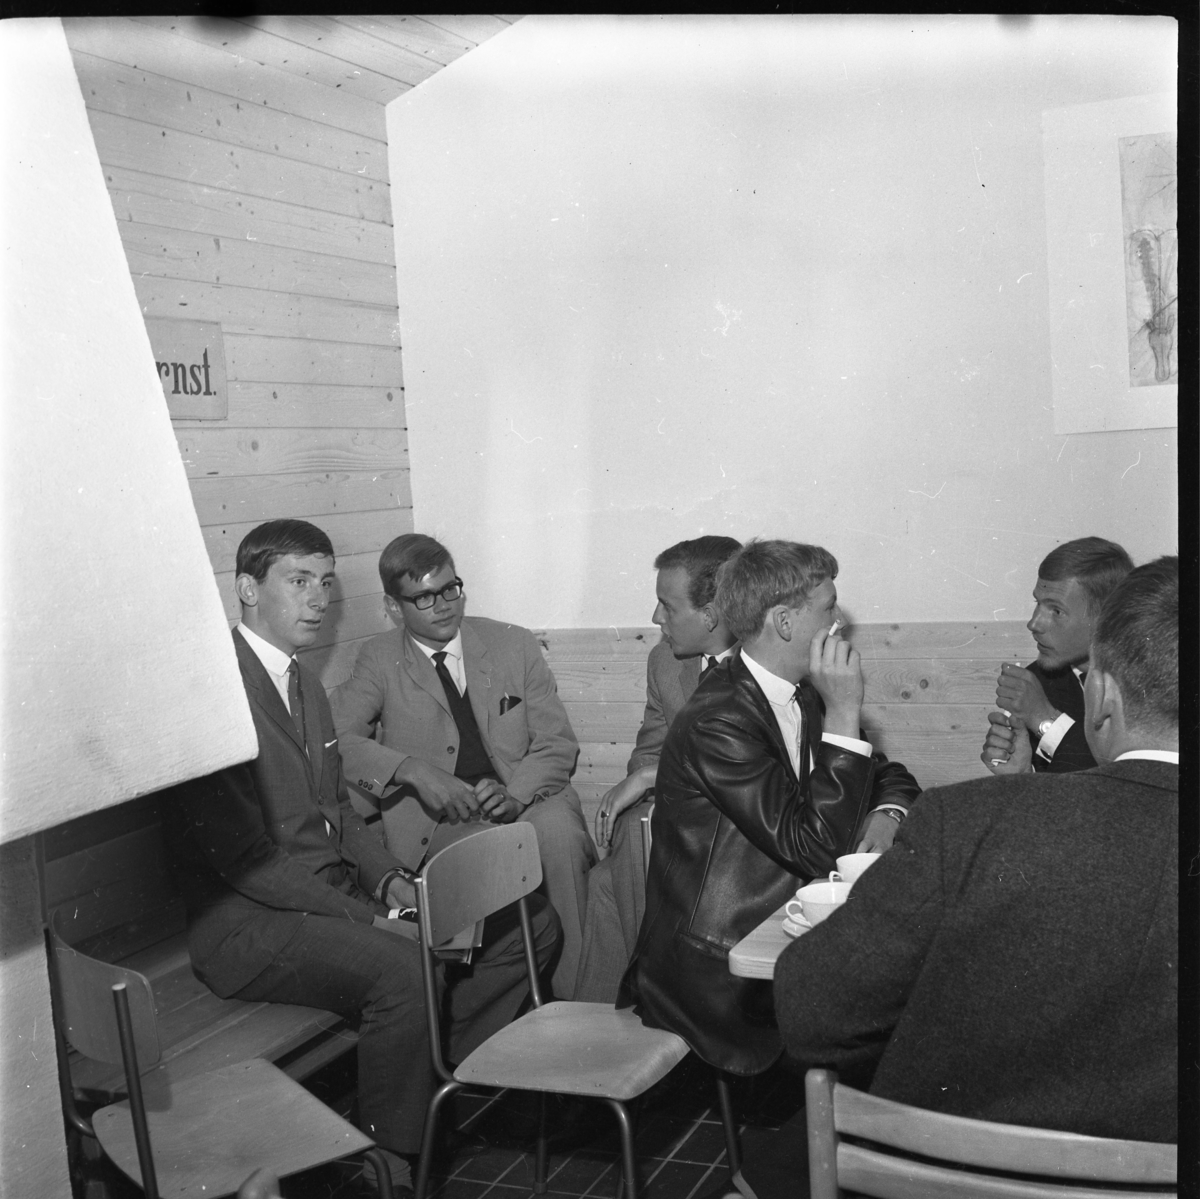 Grännaskolans första elever i skolans gillestuga i samband med avslutning 1964. Till vänster sitter Anders Hugander intill Jan Lothigius med glasögon. Andra elever runt ett bord med kaffekoppar.